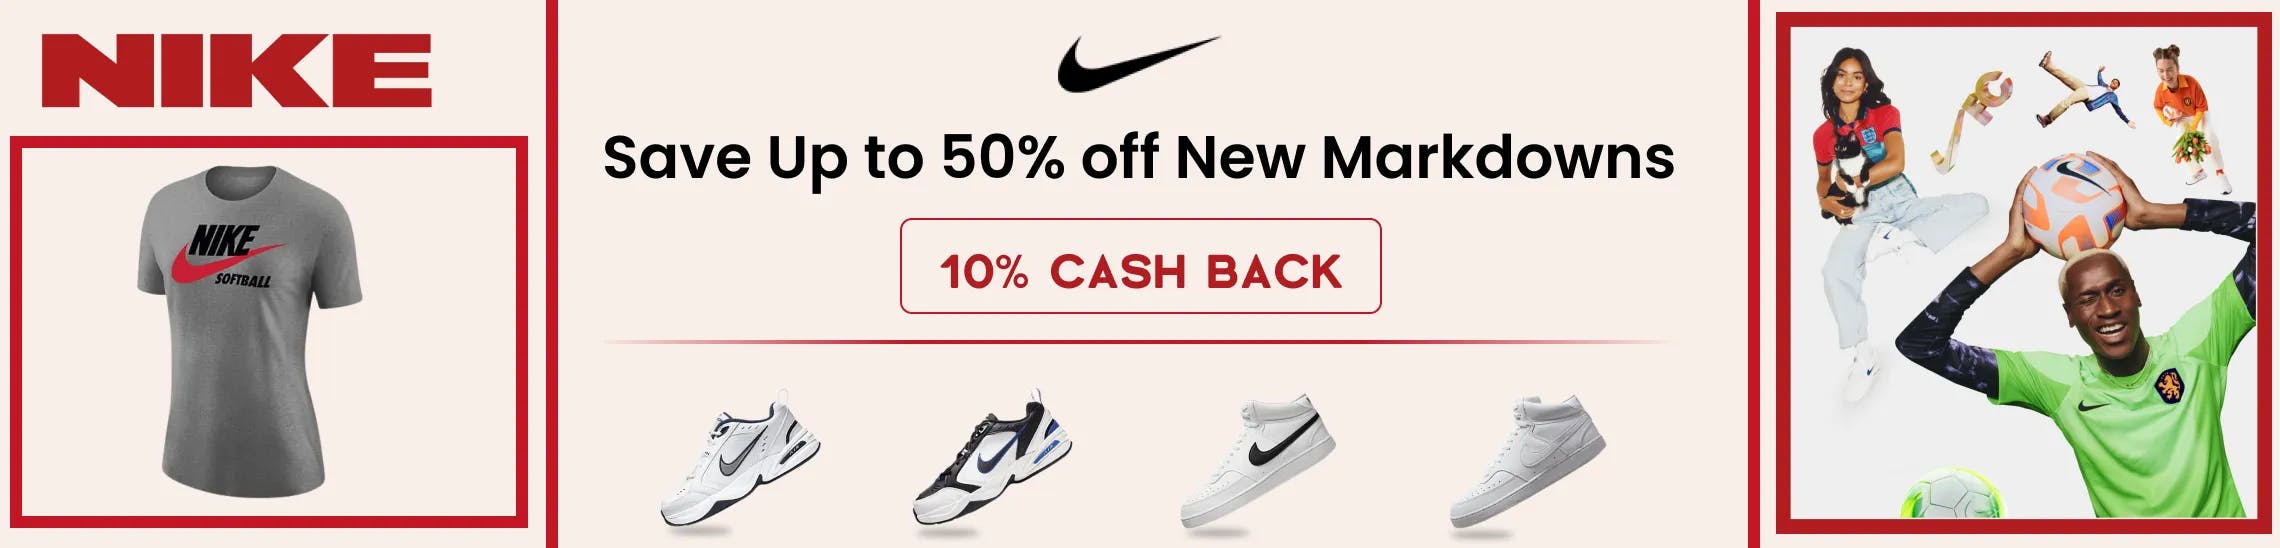 Nike Promo Codes & Cash Back